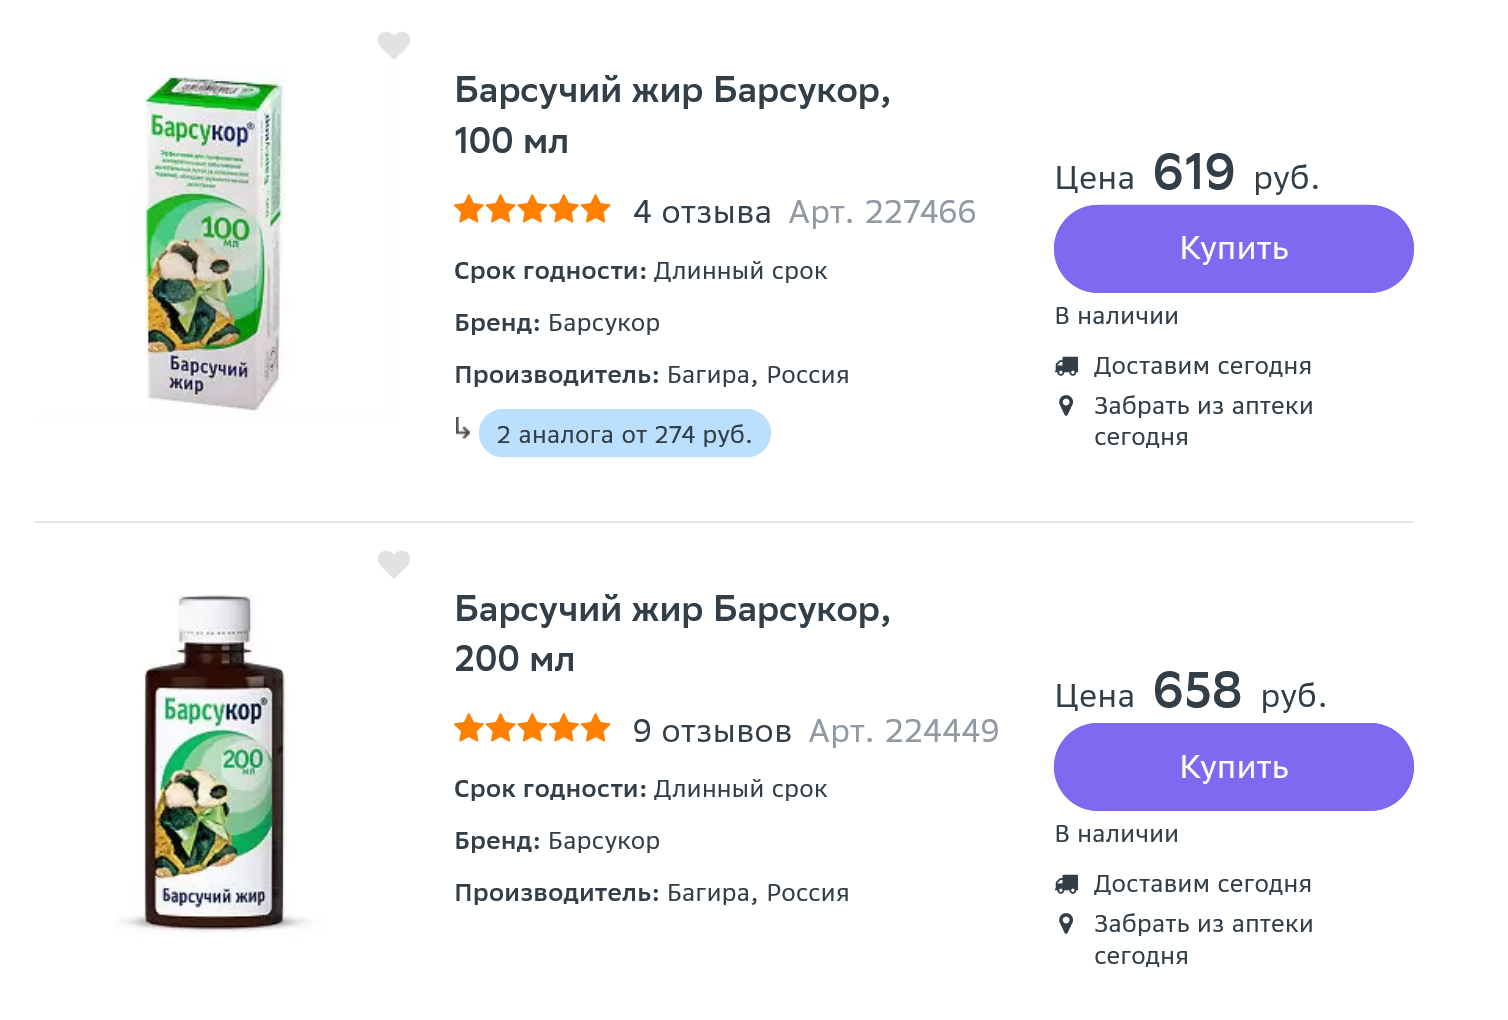 Барсучий жир продают и в аптеках, однако лечиться им не только бесполезно, но и вредно. Источник: eapteka.ru